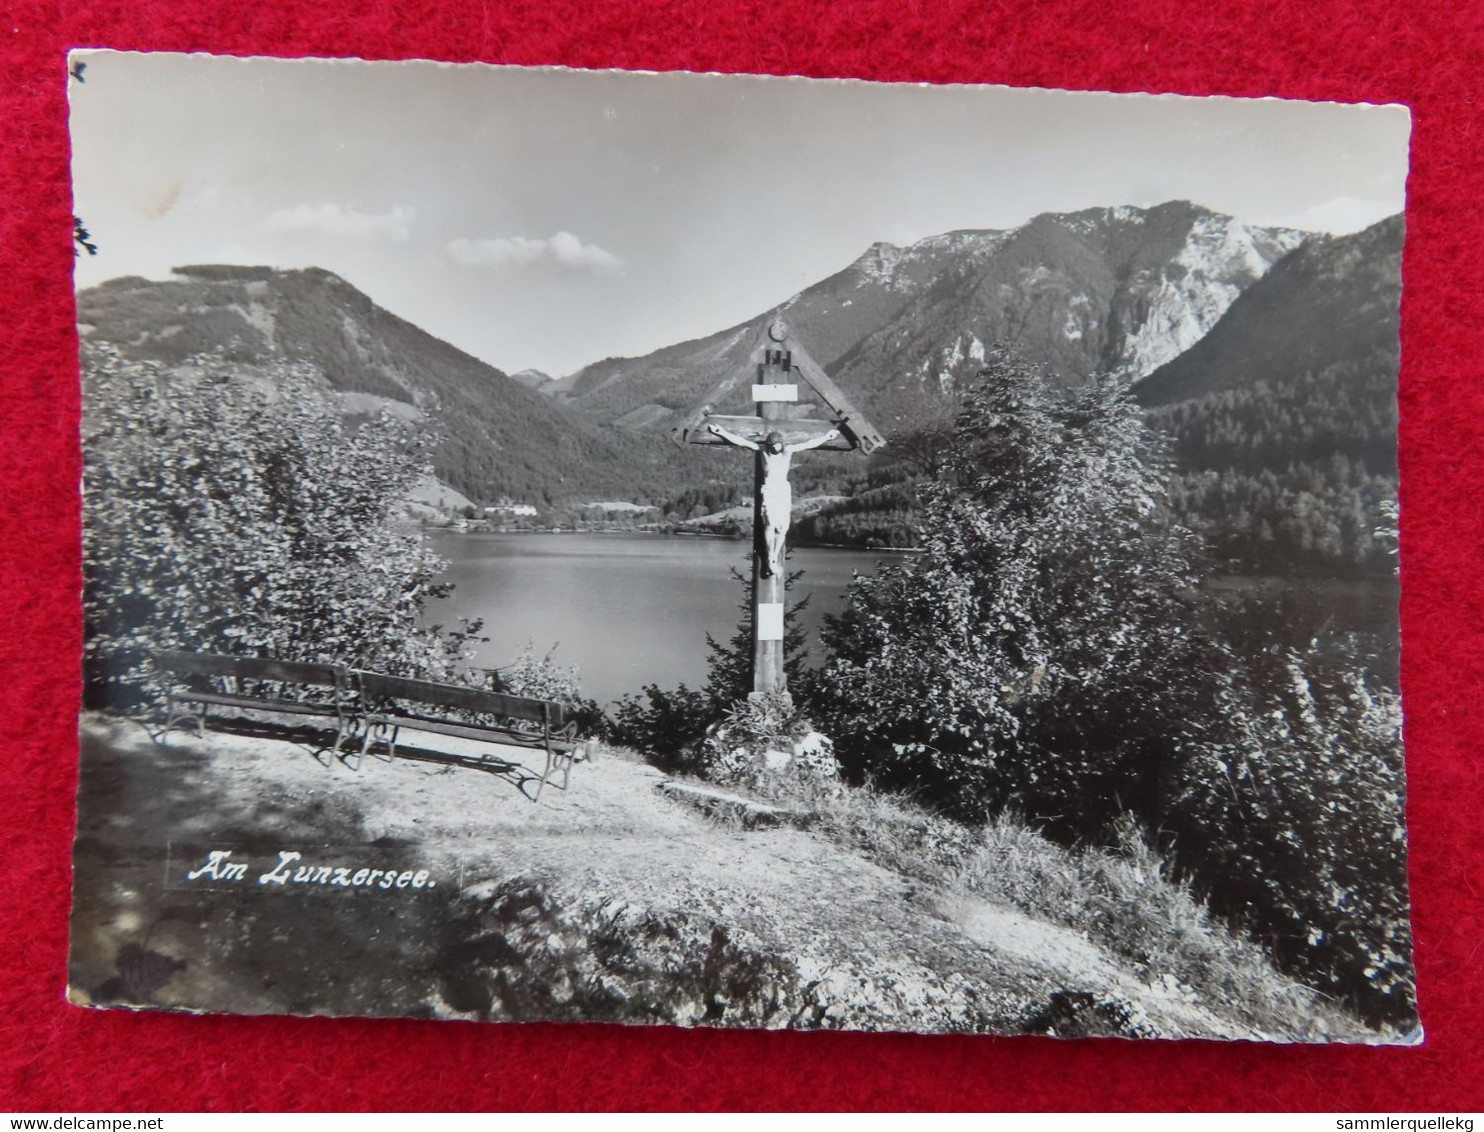 AK: Am Lunzersee, Gelaufen 12. VIII. 1955 (Nr.3536) - Lunz Am See